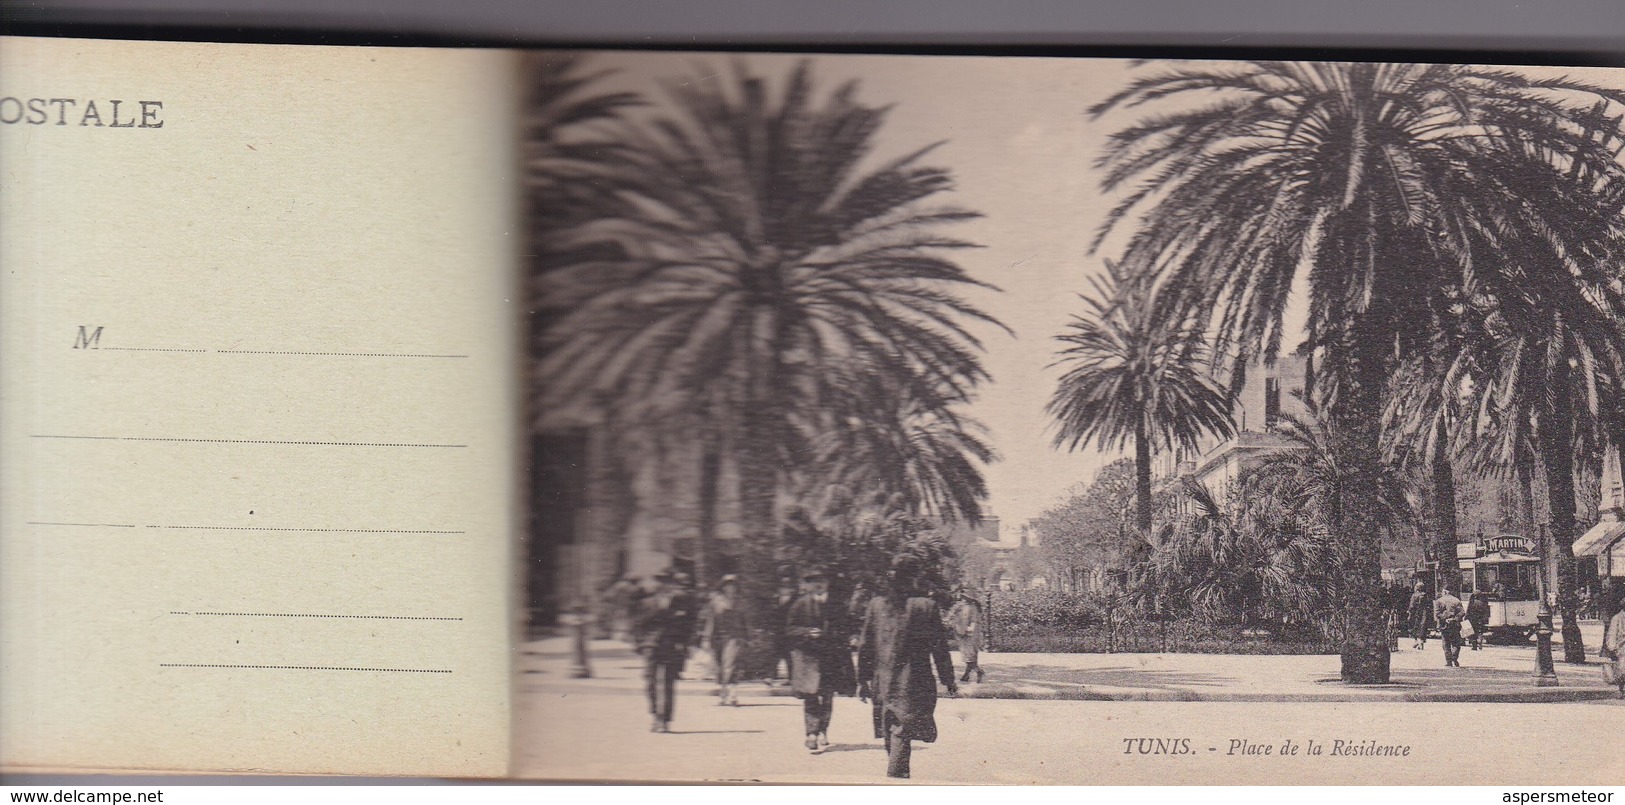 TUNIS, 24 VUES DETACHABLES. AM. PHOTOSET GRUSS AUS LEMBRANÇA SOUVENIR 1900s - BLEUP - Tunisia